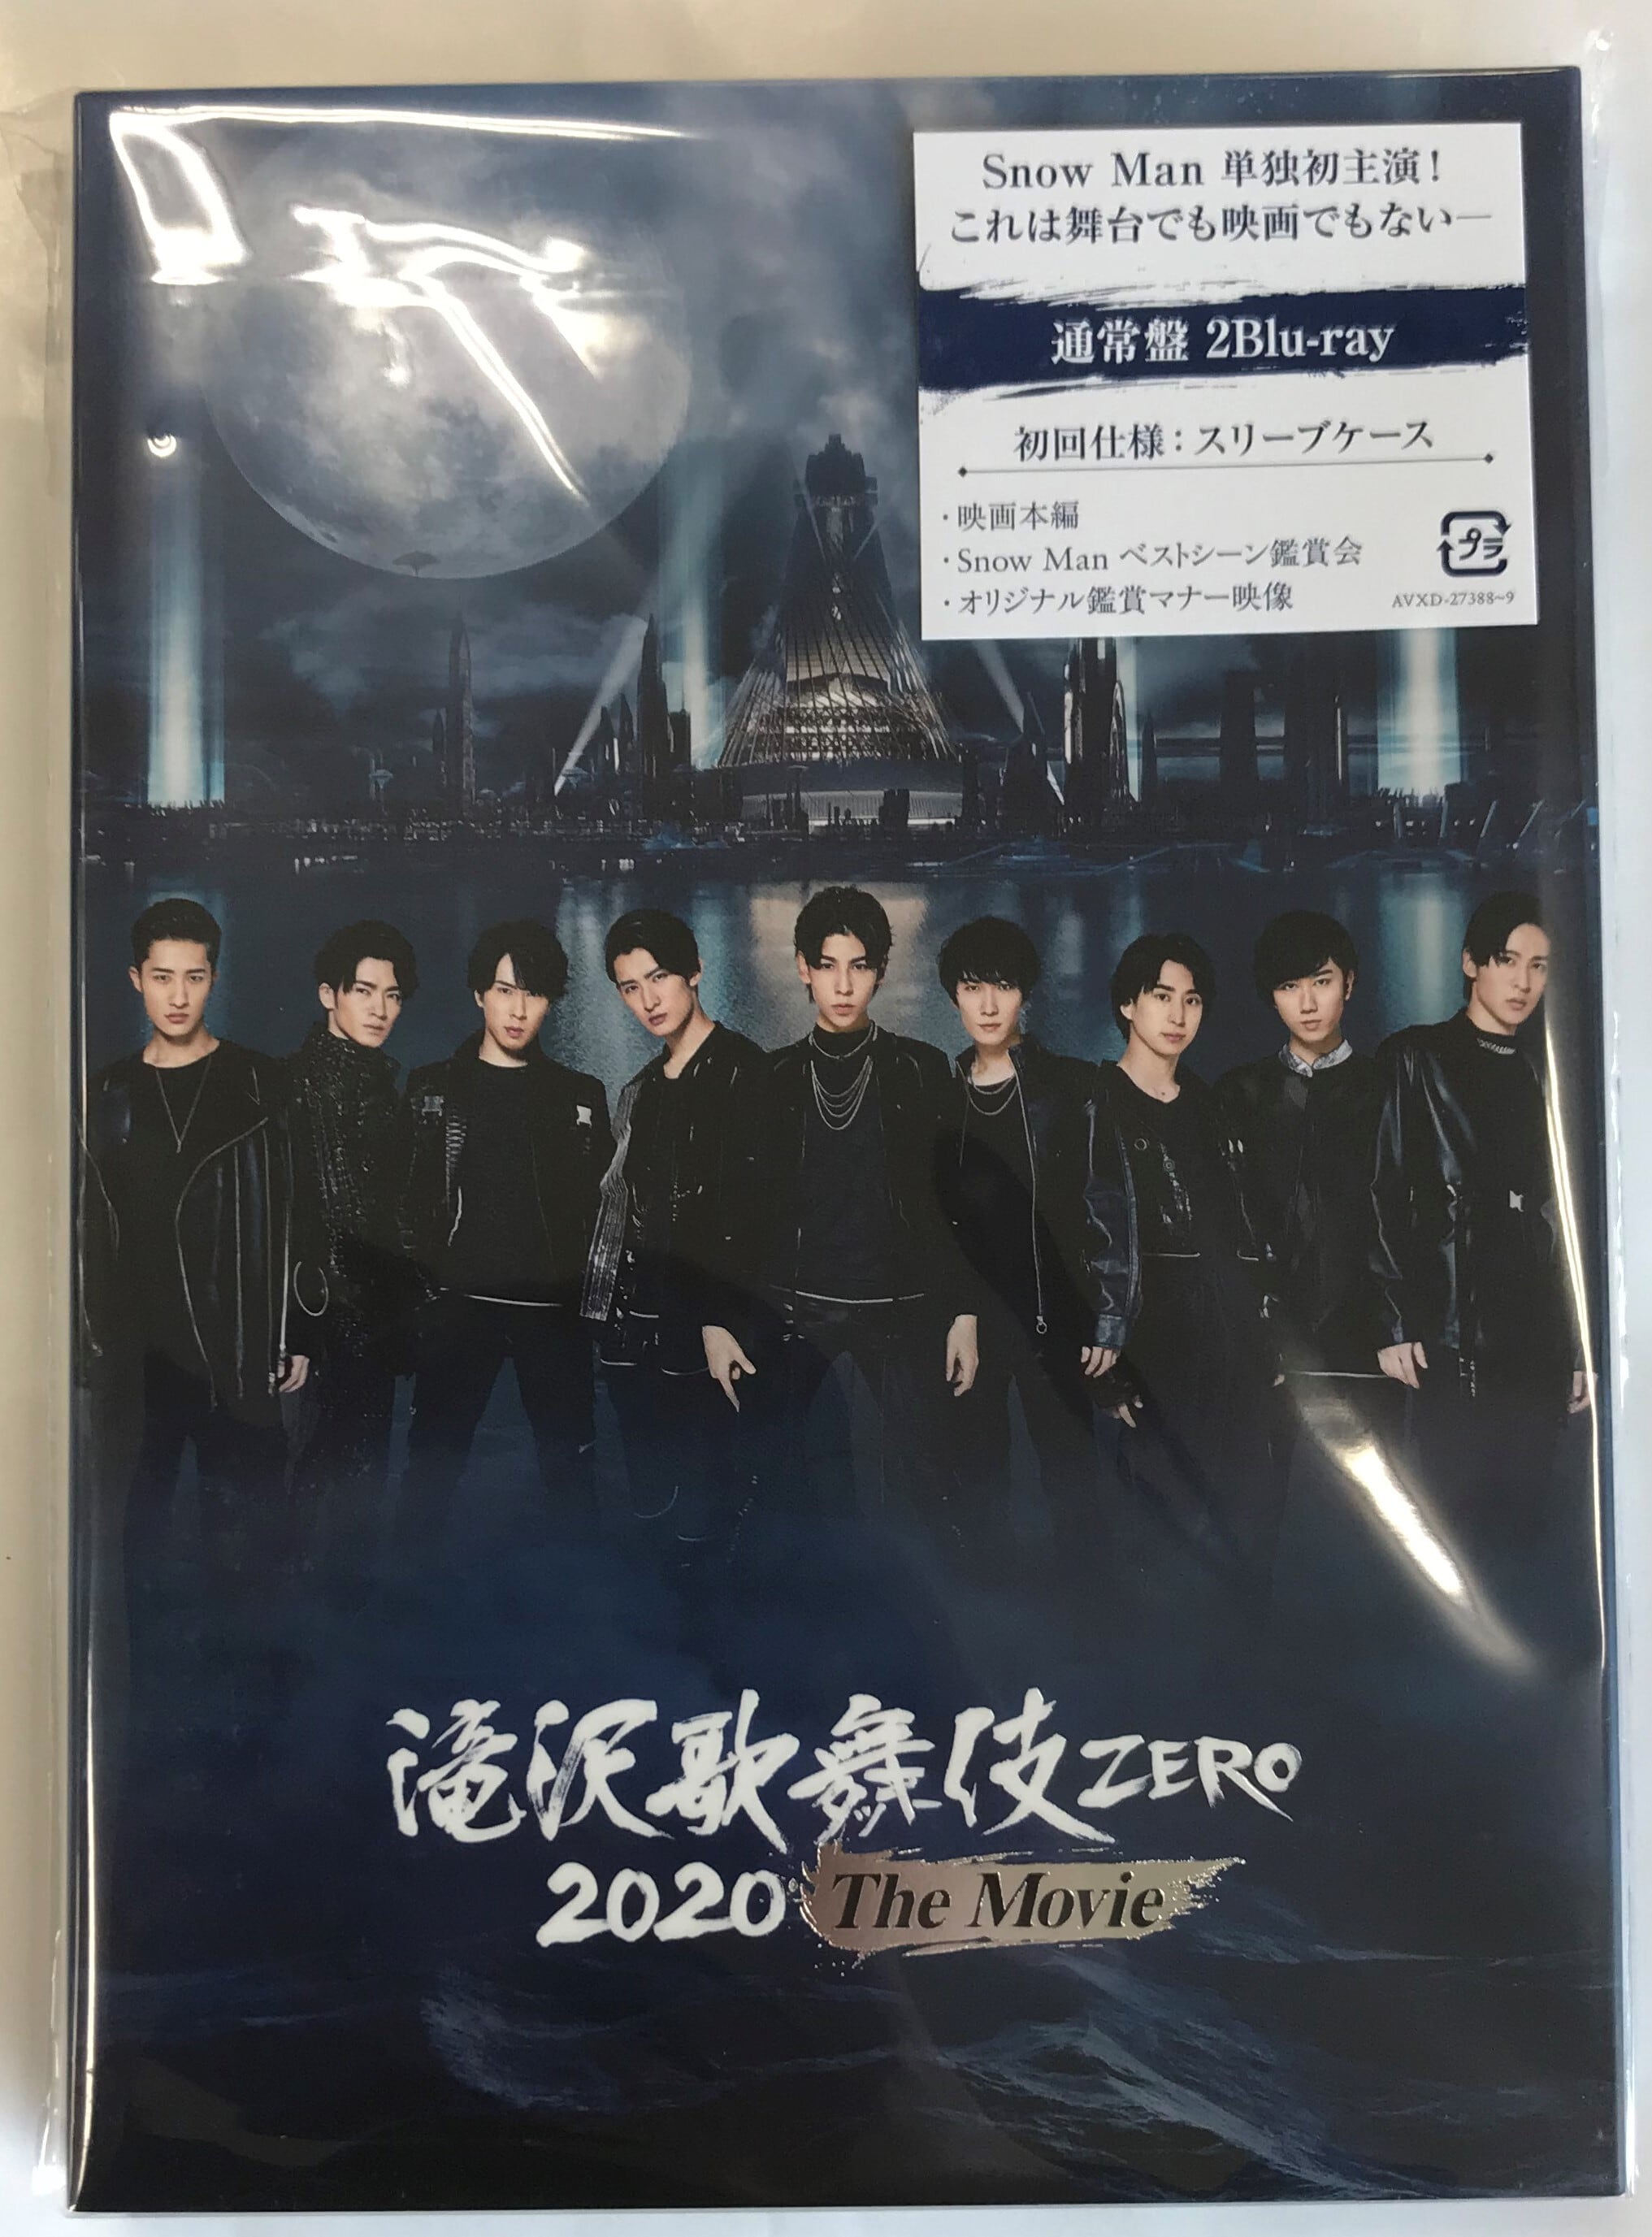 滝沢歌舞伎zero 2020 the movie BluRay 初回限定盤